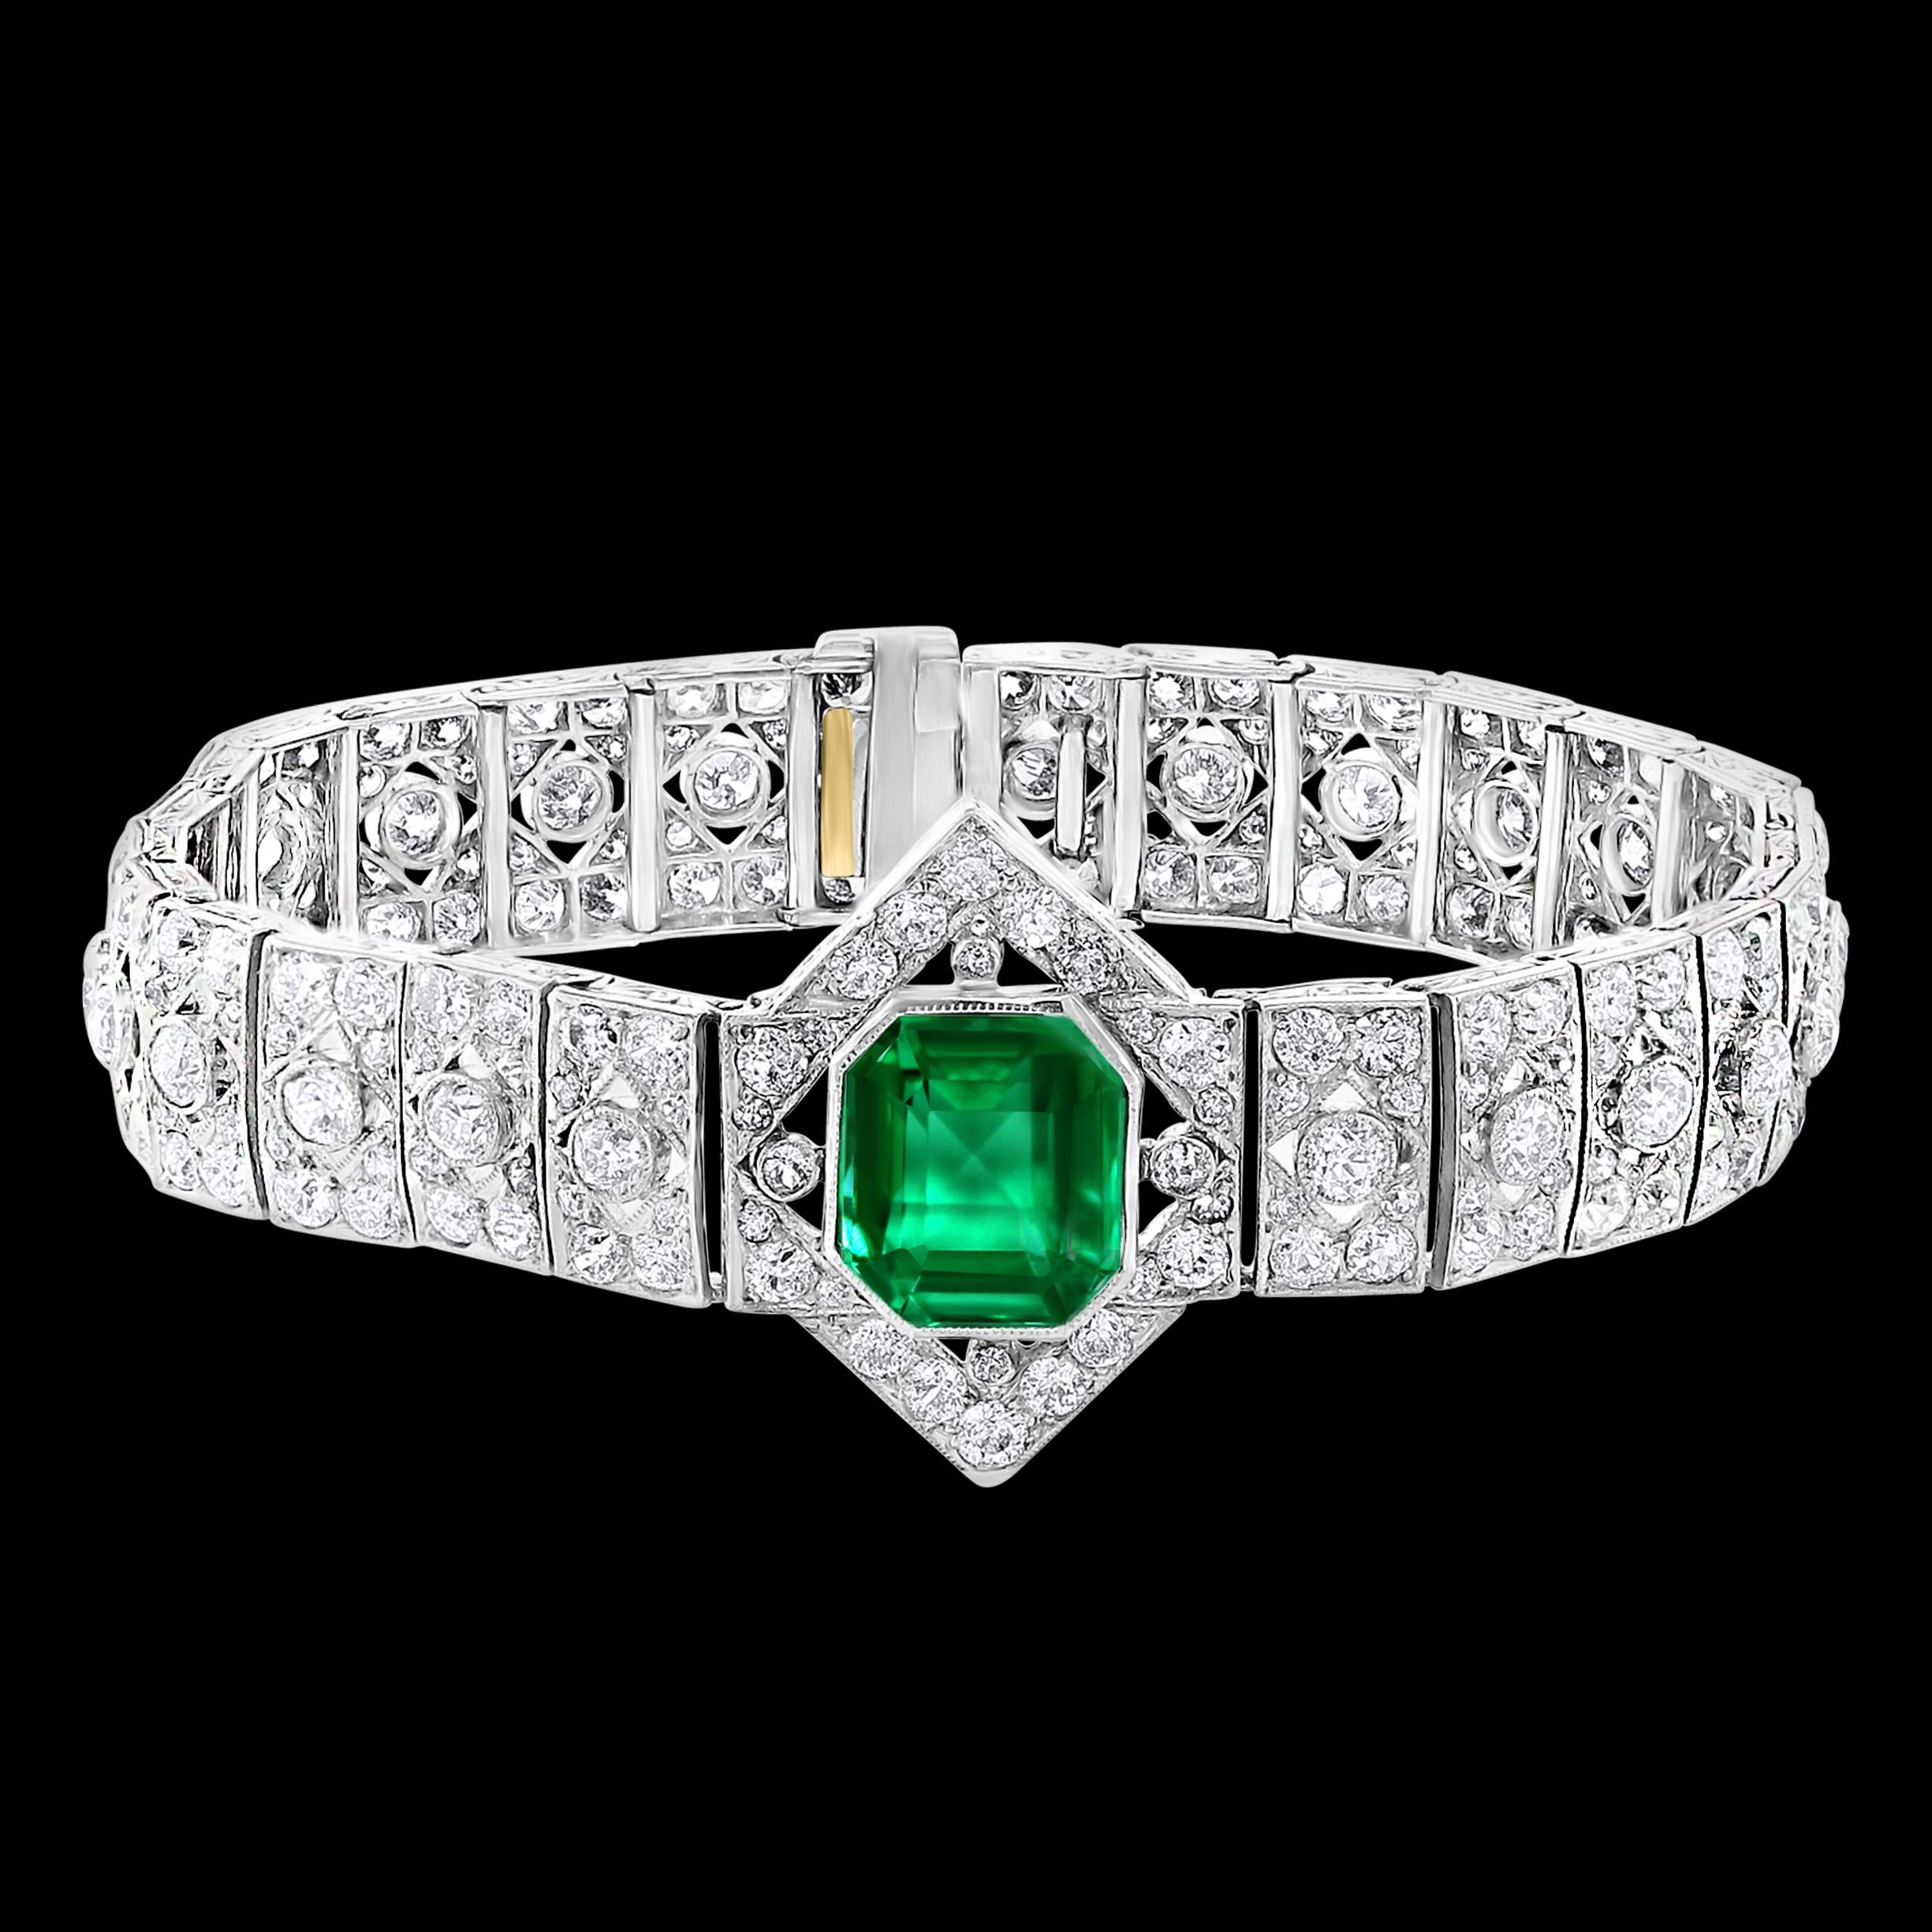  1930's AGL zertifiziert 3,4 Karat kolumbianischen Smaragd unbedeutend bis geringfügig  & 8 Karat Diamant-Platin-Armband 
Ein spektakuläres Schmuckstück.  Dieses außergewöhnliche Armband hat einen kolumbianischen  Smaragd als Mittelstein . Das